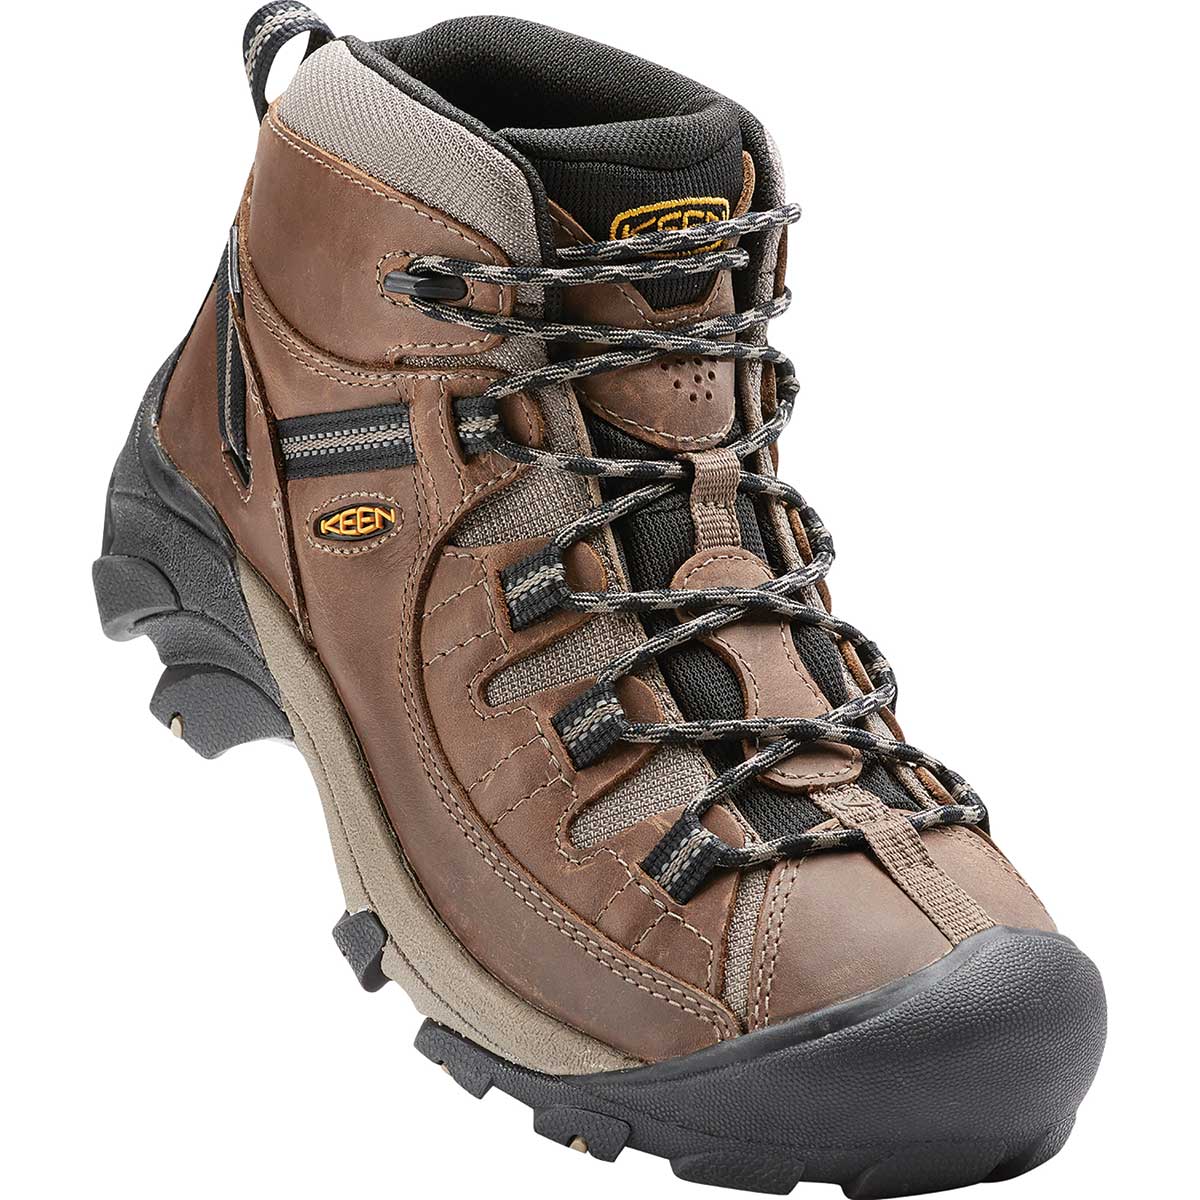 Keen Outdoor Men's Targhee II Waterproof Mid Hiking Boots | Gempler's